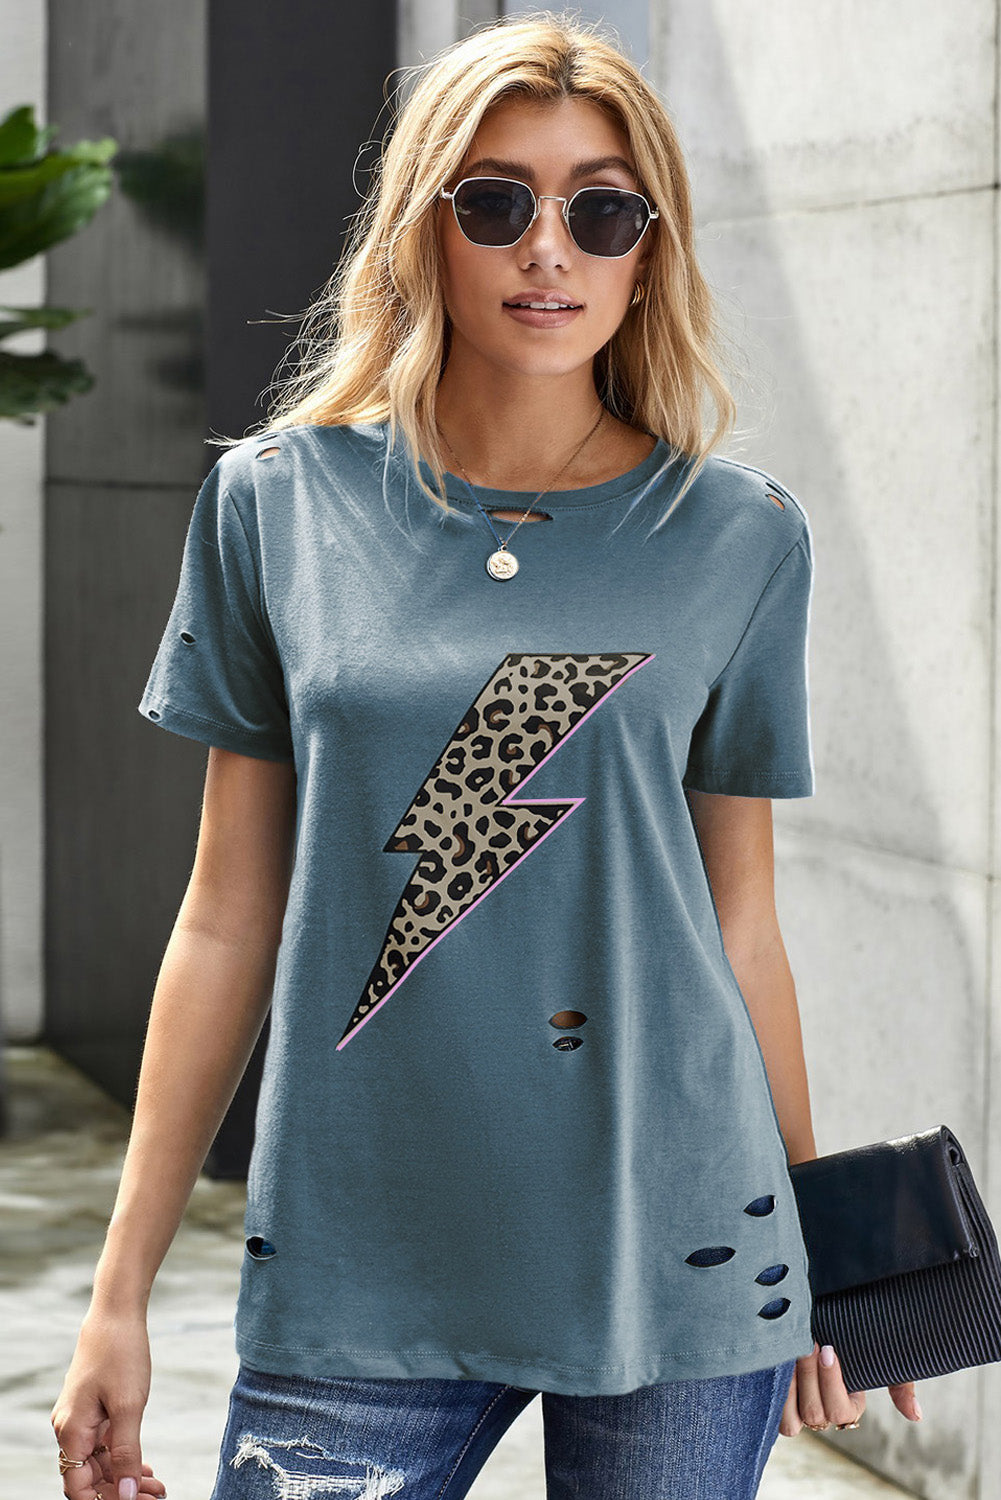 Trendsi Cupid Beauty Supplies Blue / S Woman's T-Shirts Leopard Lip Distressed T-Shirt